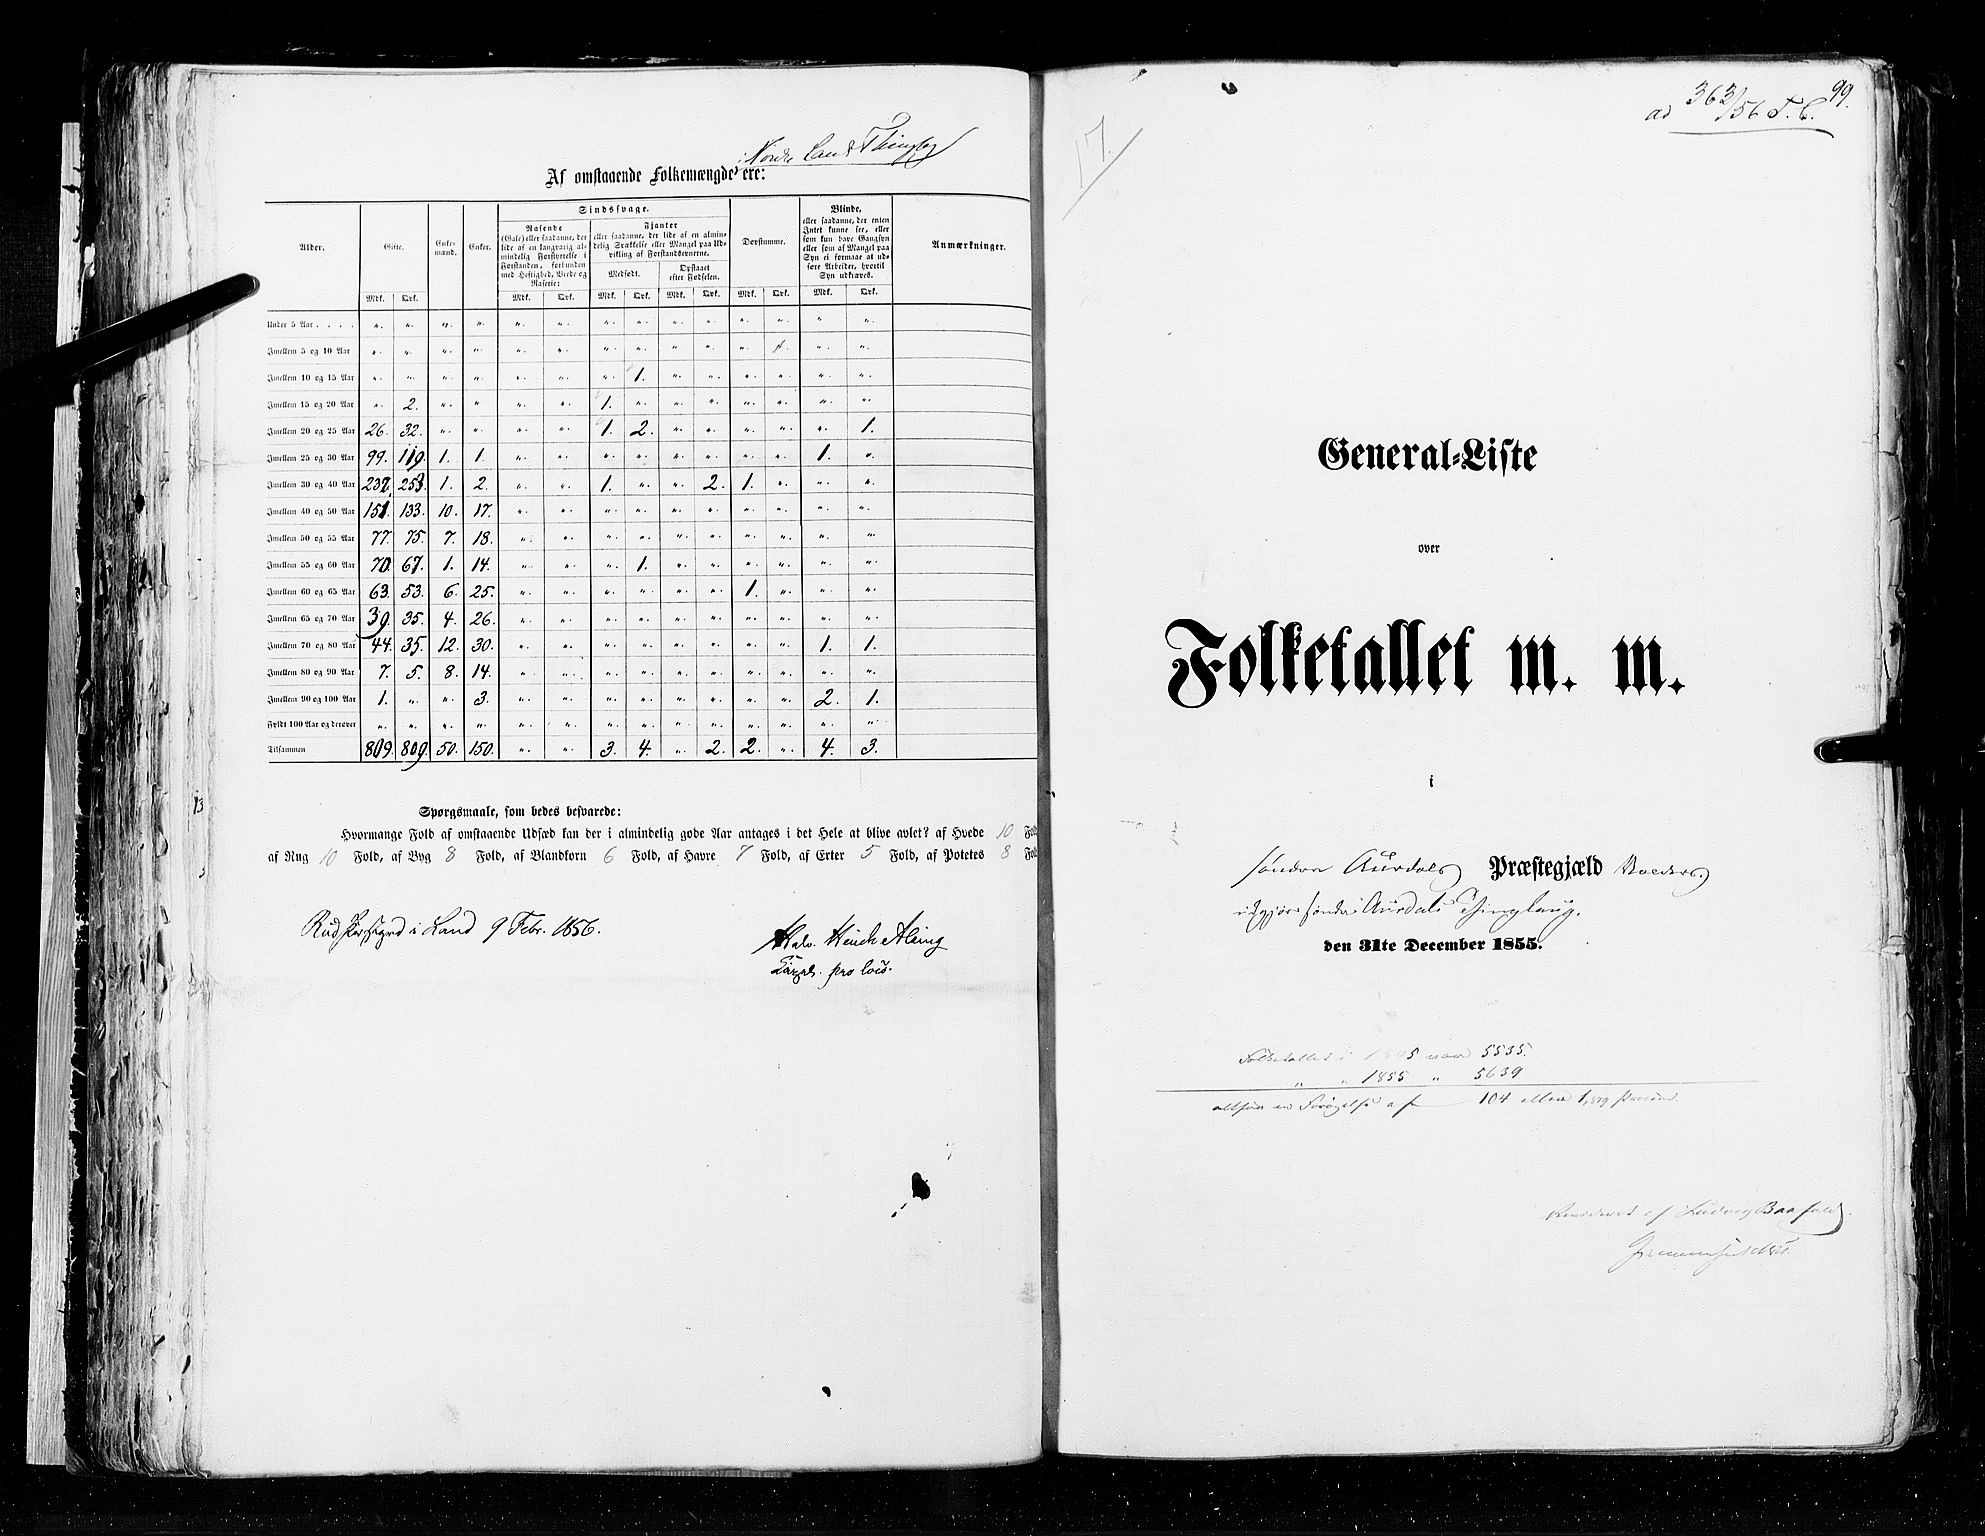 RA, Census 1855, vol. 2: Kristians amt, Buskerud amt og Jarlsberg og Larvik amt, 1855, p. 99